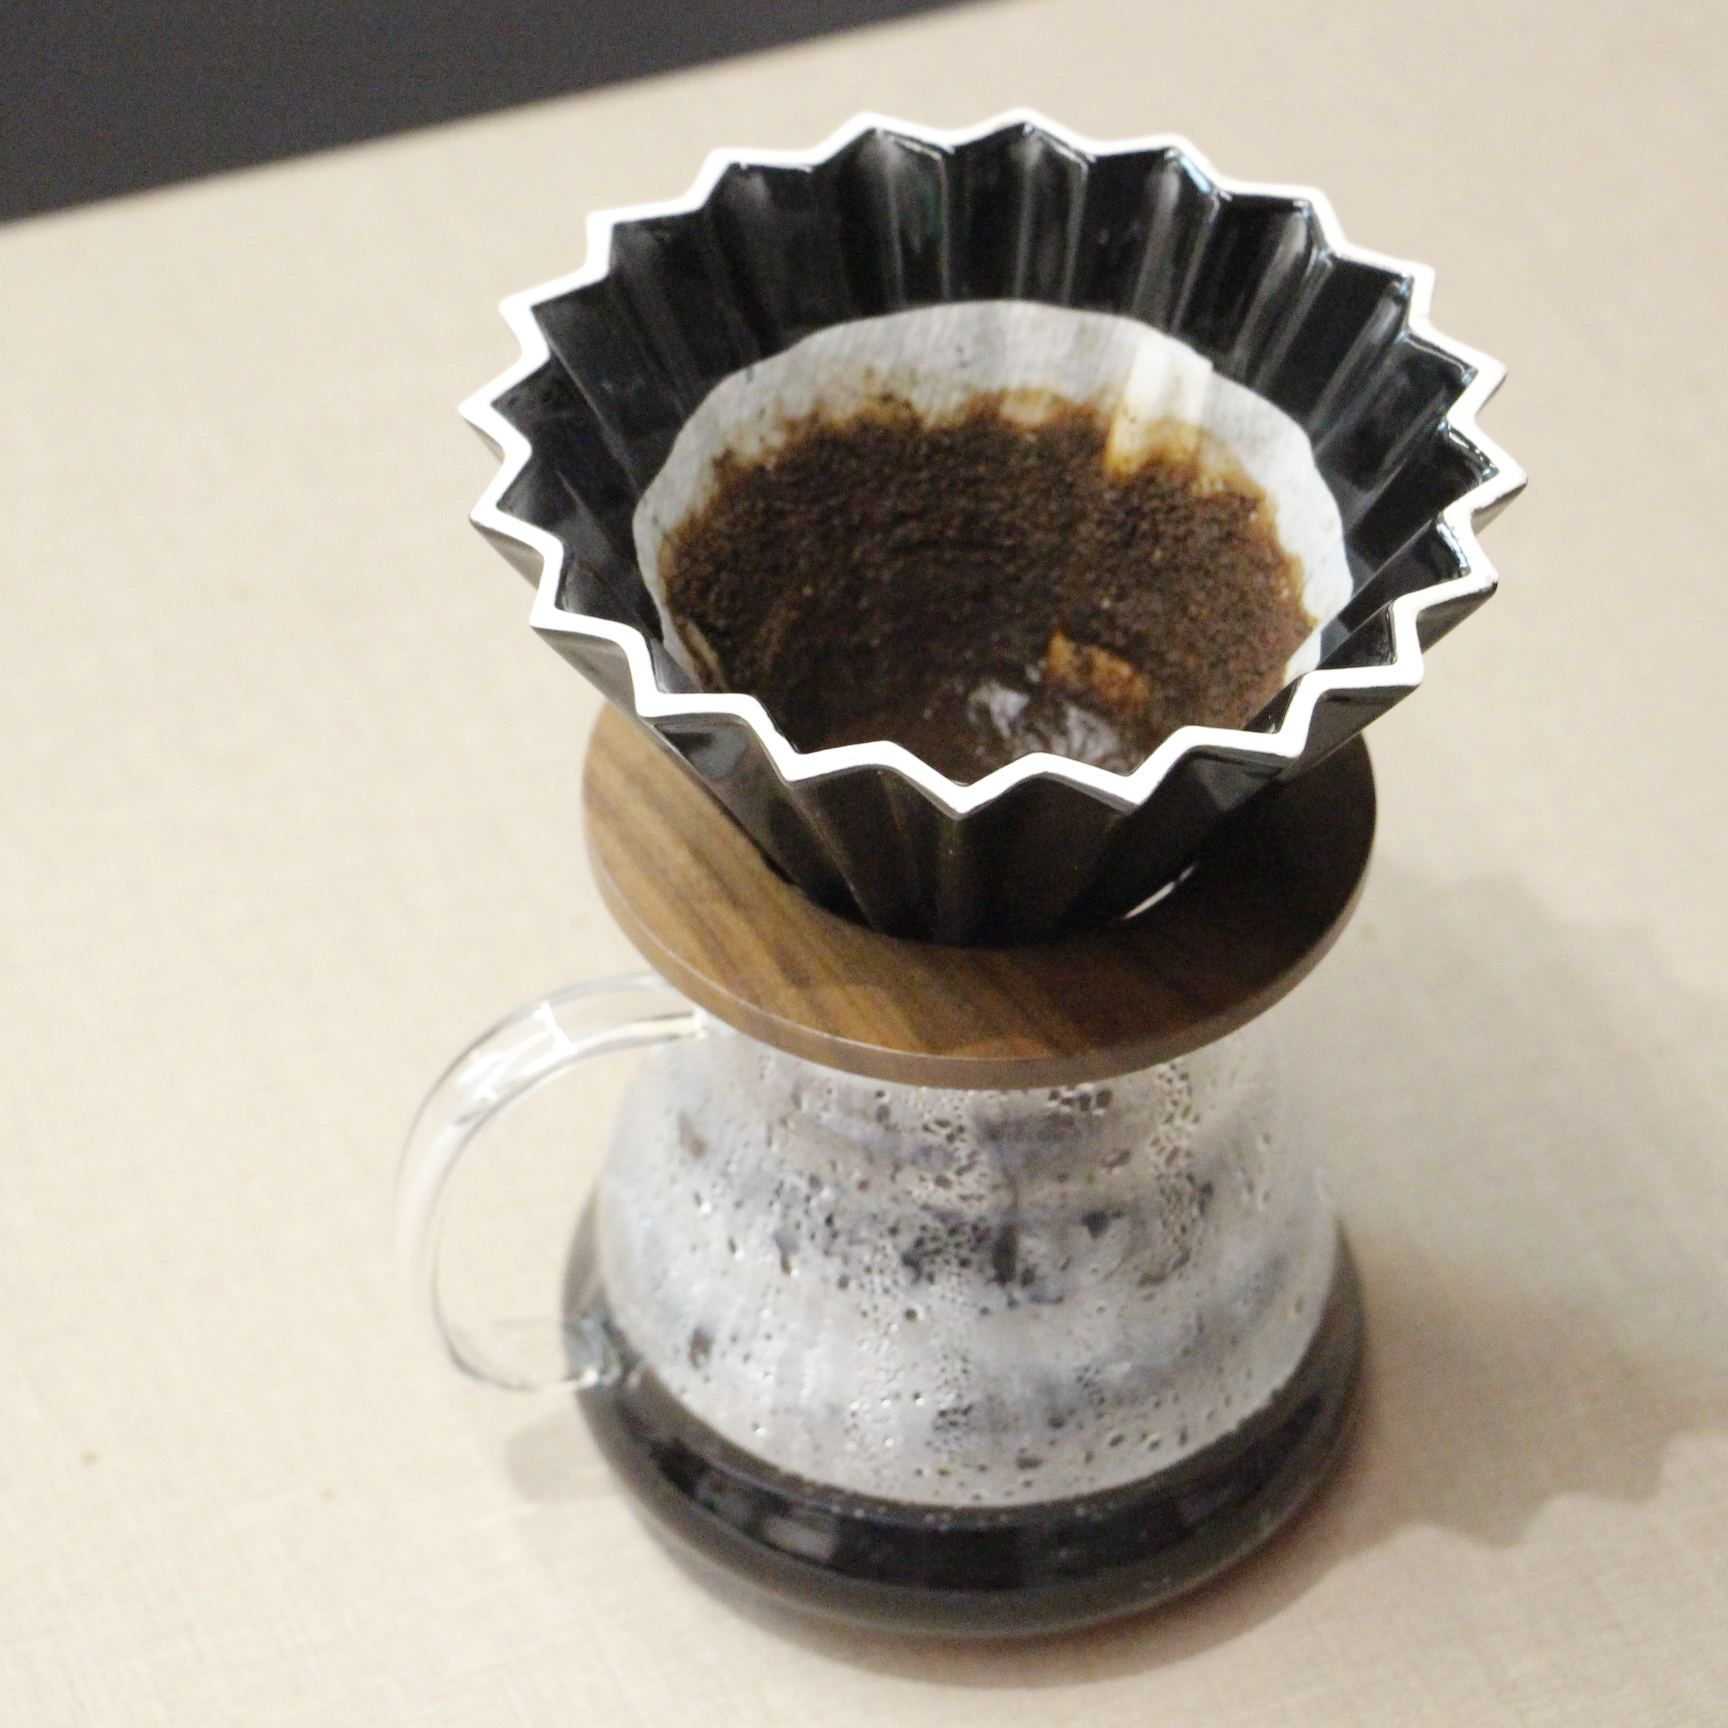 Siente el encanto del V60 Origami: un método de café filtrado que es a la vez una obra de arte. Creado en porcelana con diseño floral, este gotero eleva la preparación del café a un nivel superior. Un regalo que refleja tu amor por el sabor y la estética.